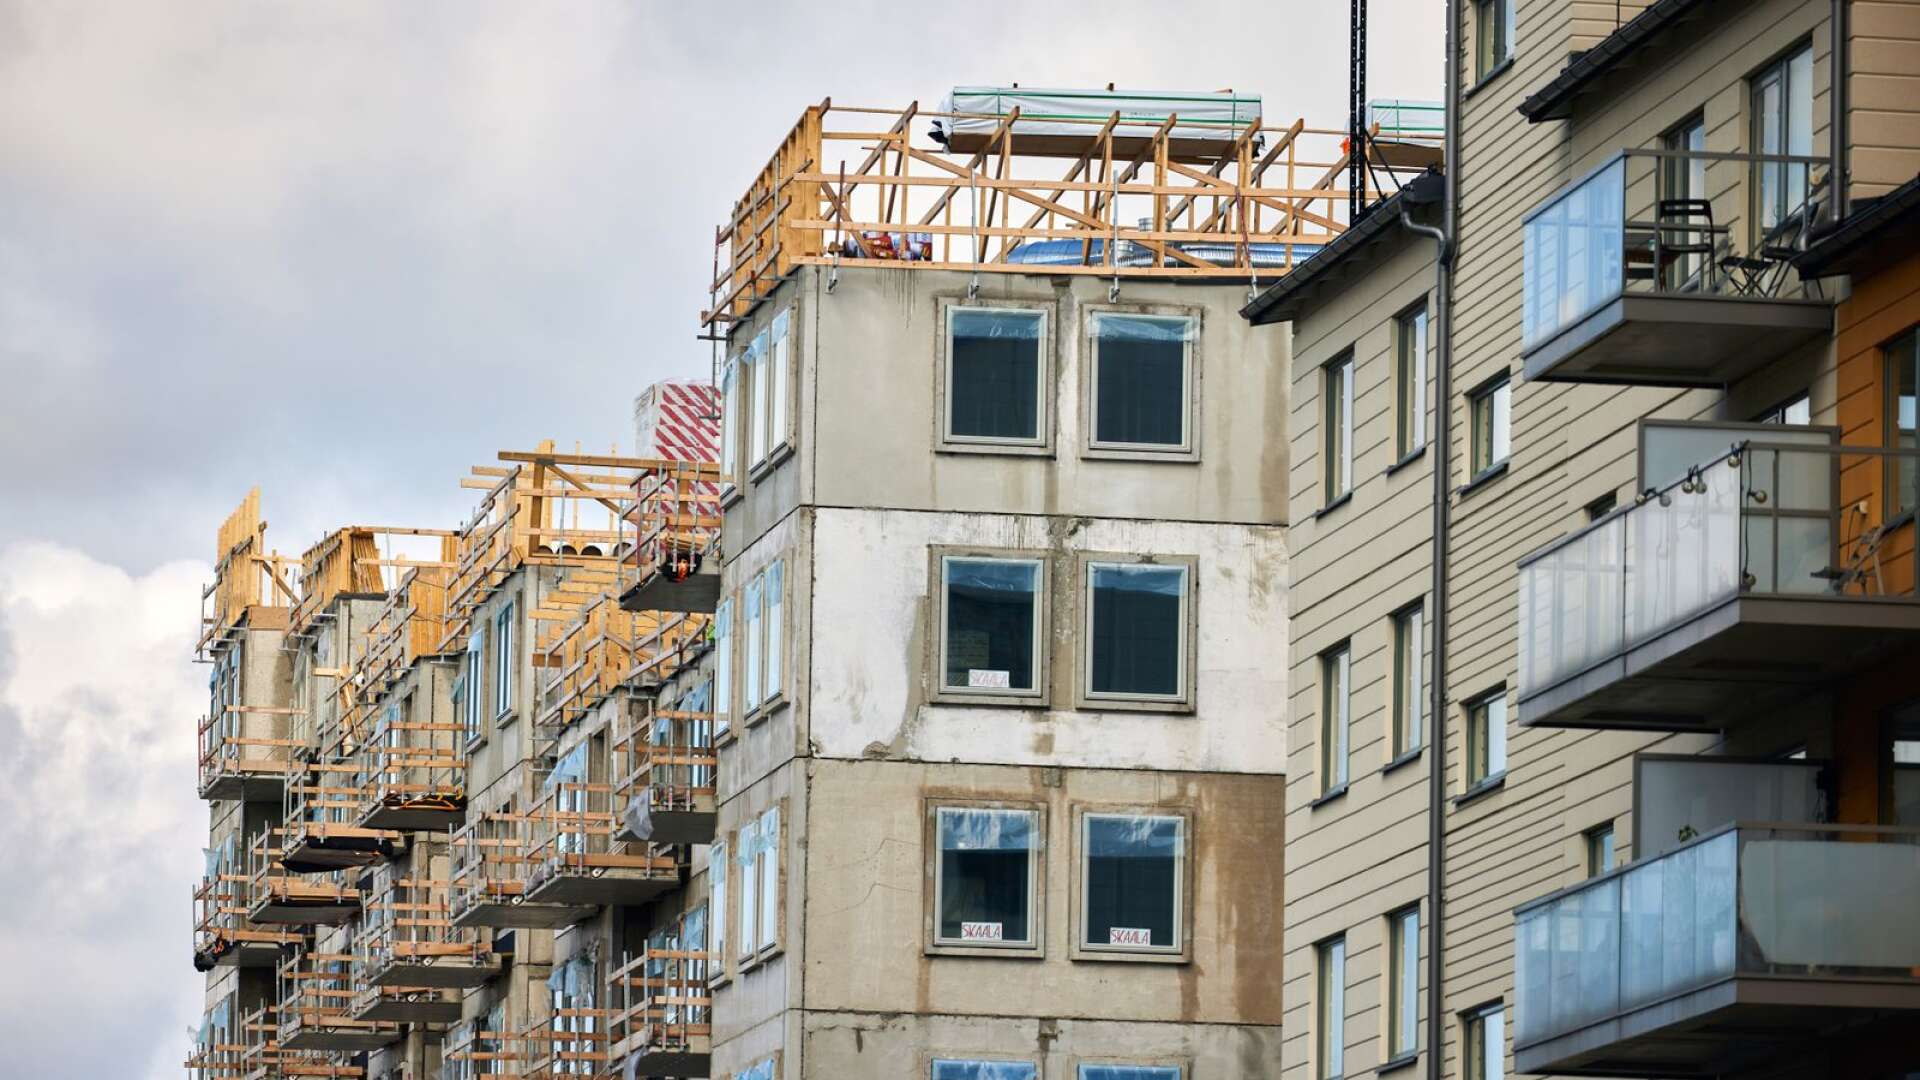 Att hälften av alla bostäder överklagas redan på detaljplanestadiet gör att bostadsbyggandet både försenas och blir dyrare, skriver Sanna Andersson och Carin Hansdotter.